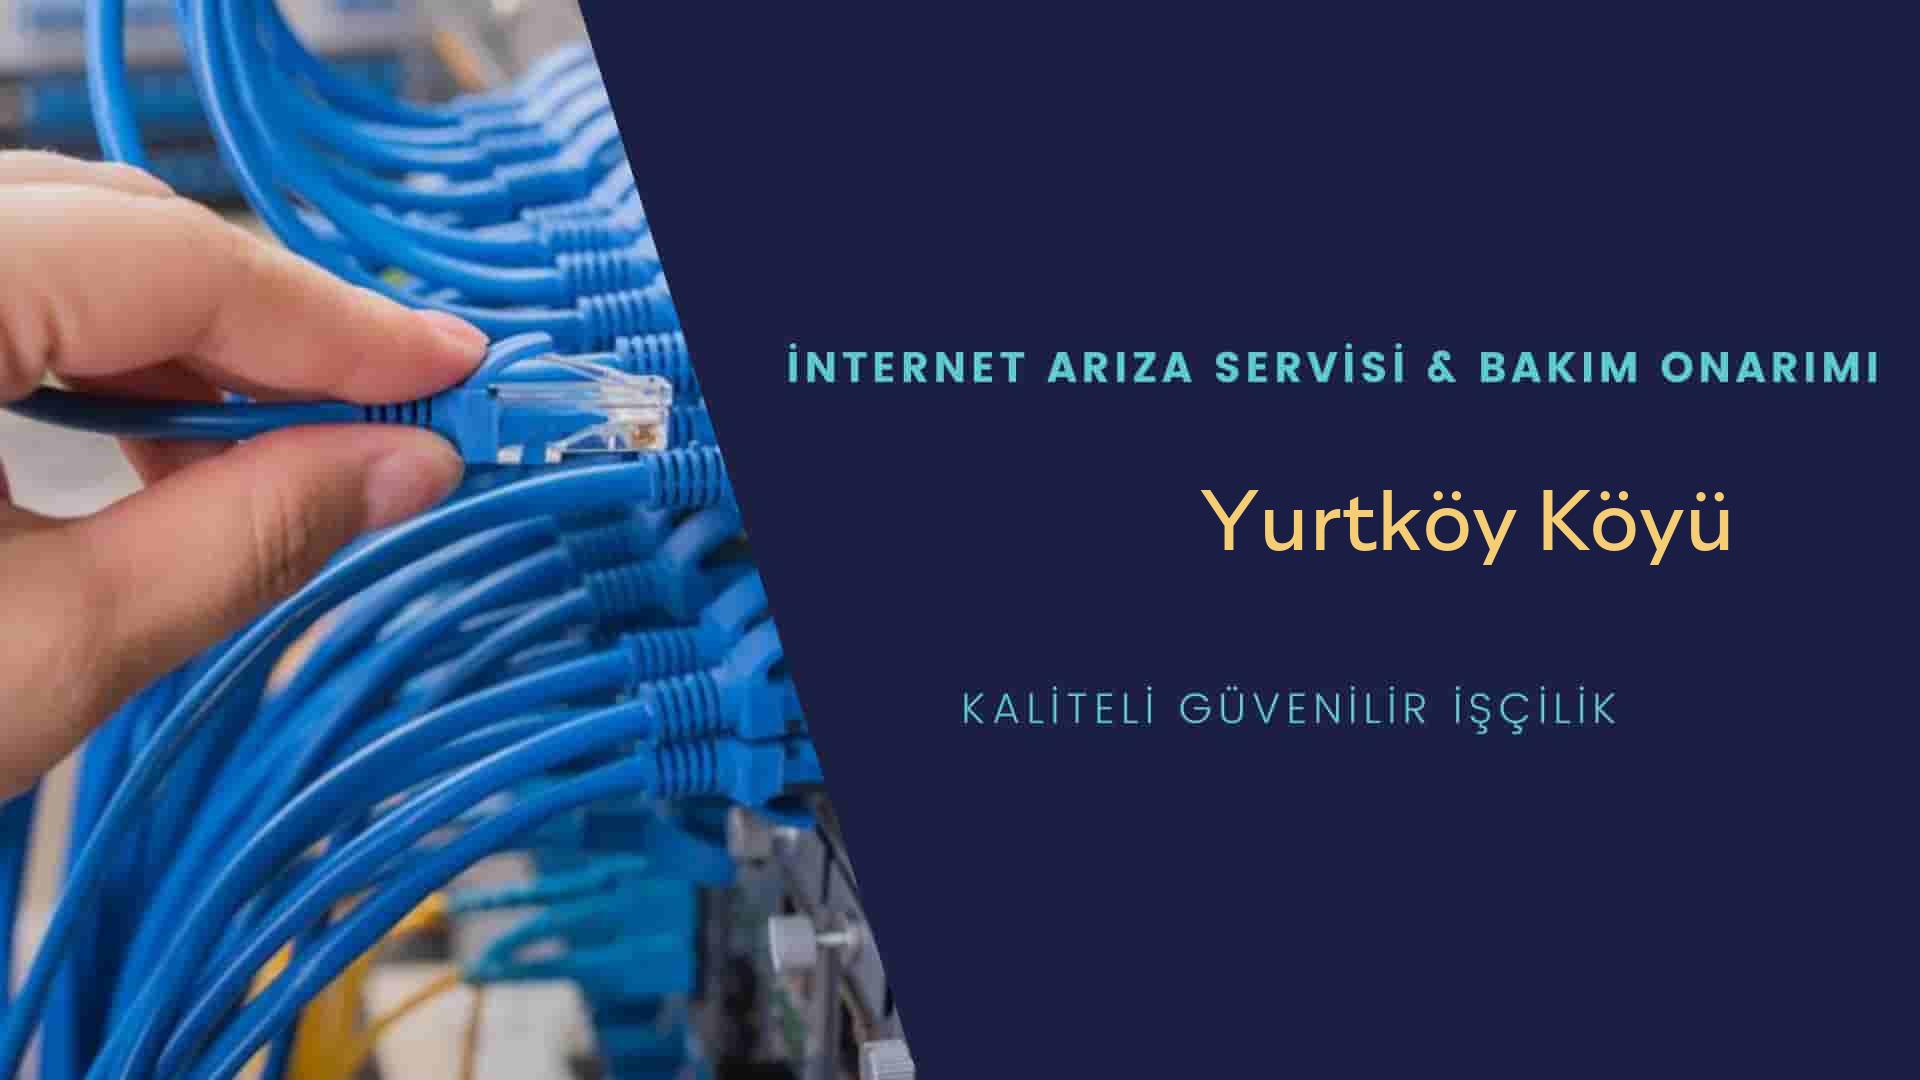 Yurtköy Köyü internet kablosu çekimi yapan yerler veya elektrikçiler mi? arıyorsunuz doğru yerdesiniz o zaman sizlere 7/24 yardımcı olacak profesyonel ustalarımız bir telefon kadar yakındır size.